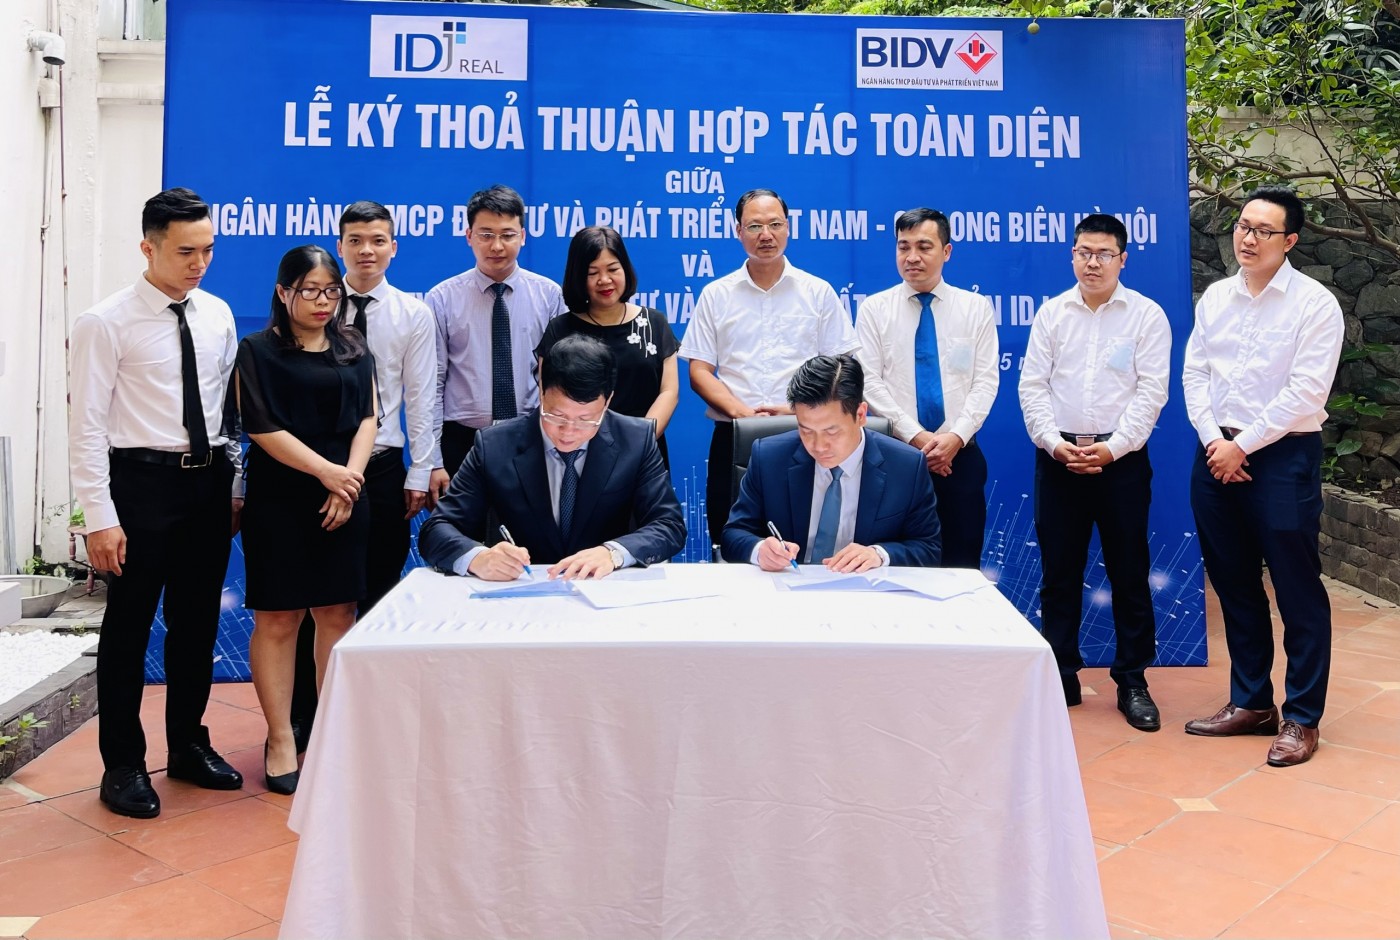 IDJ Real ký kết với BIDV